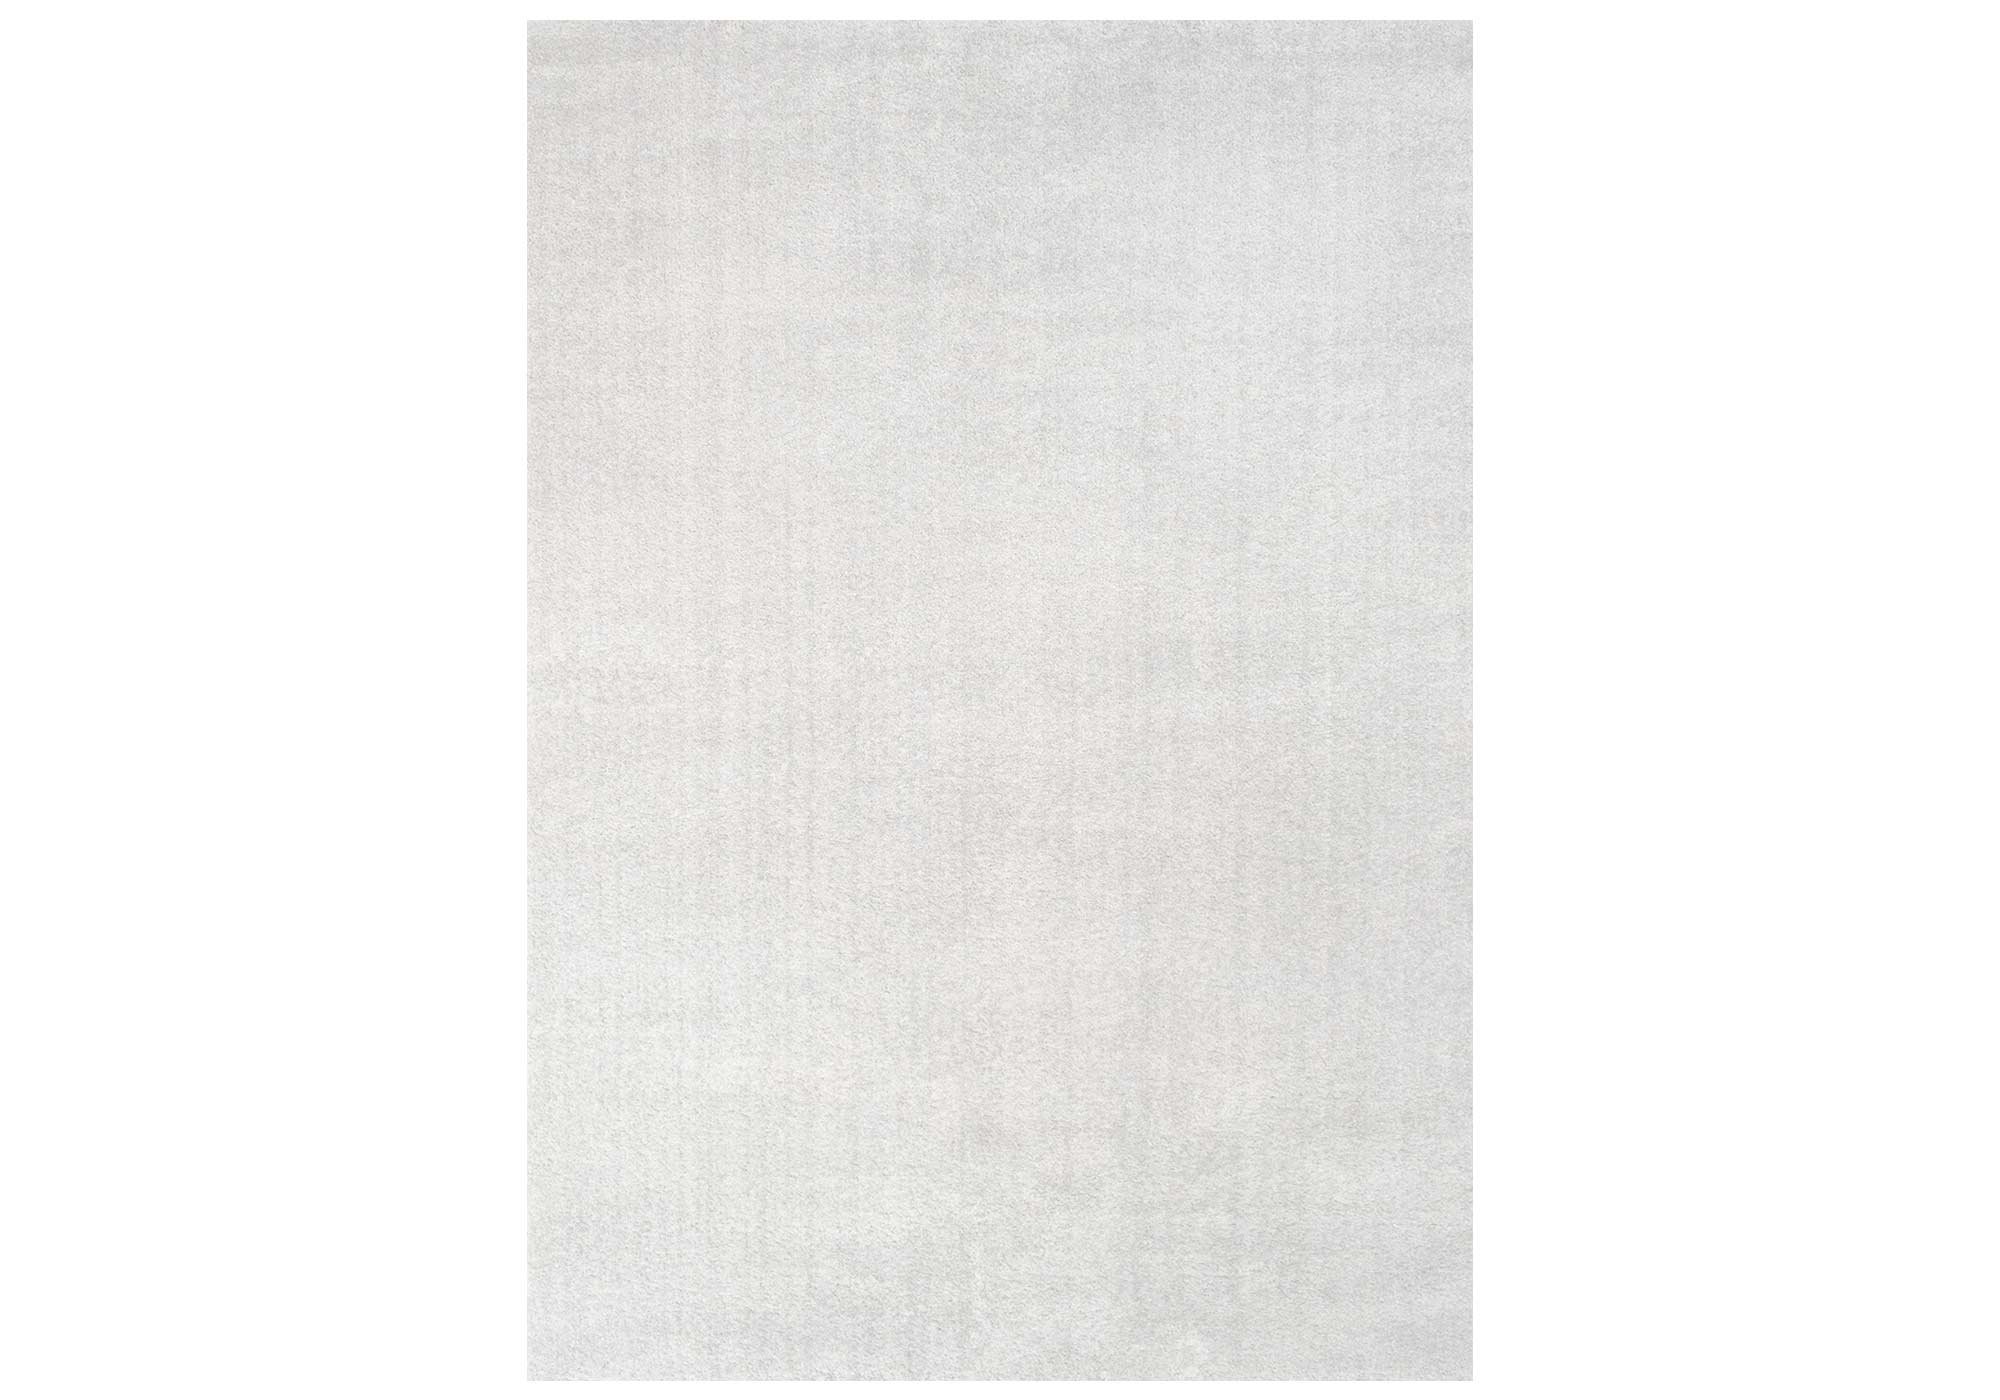 Festival Hochflor-Teppich 200 x 290 cm - weiß - 30 mm Höhe - weich - Delgardo 501